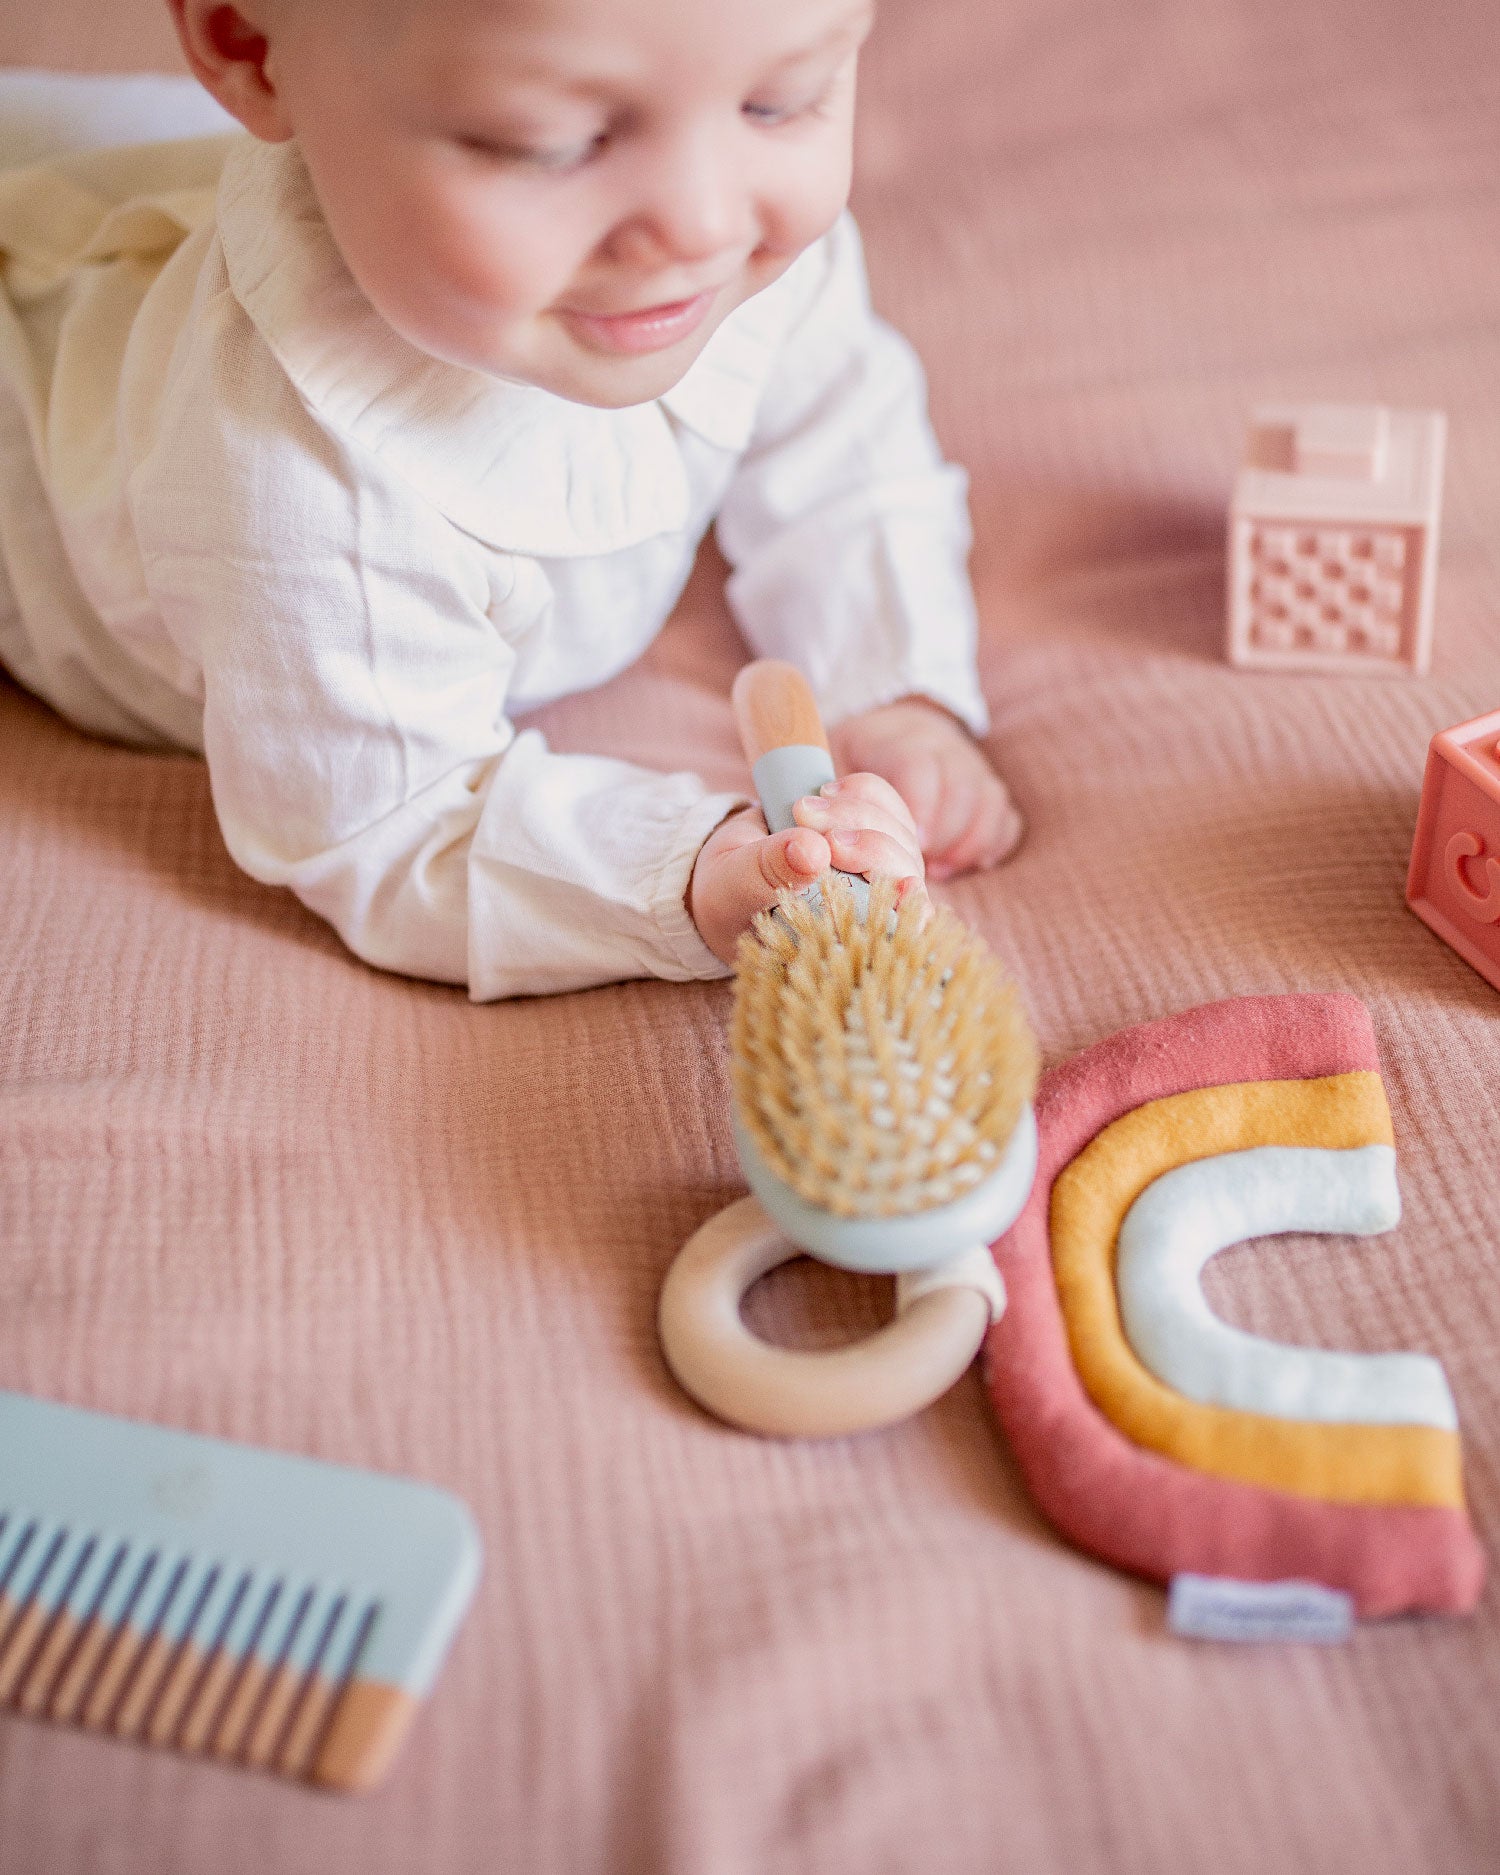 Bébé jouant sur un tapis en gaze de coton rose, avec la brosse en bois pour bébé Bachca de couleur bleu. A côté : le peigne également inclus dans kit baby hair, ainsi que quelques jouets en tissus arc en ciel et cubes. Idée cadeau de naissance originale et durable.